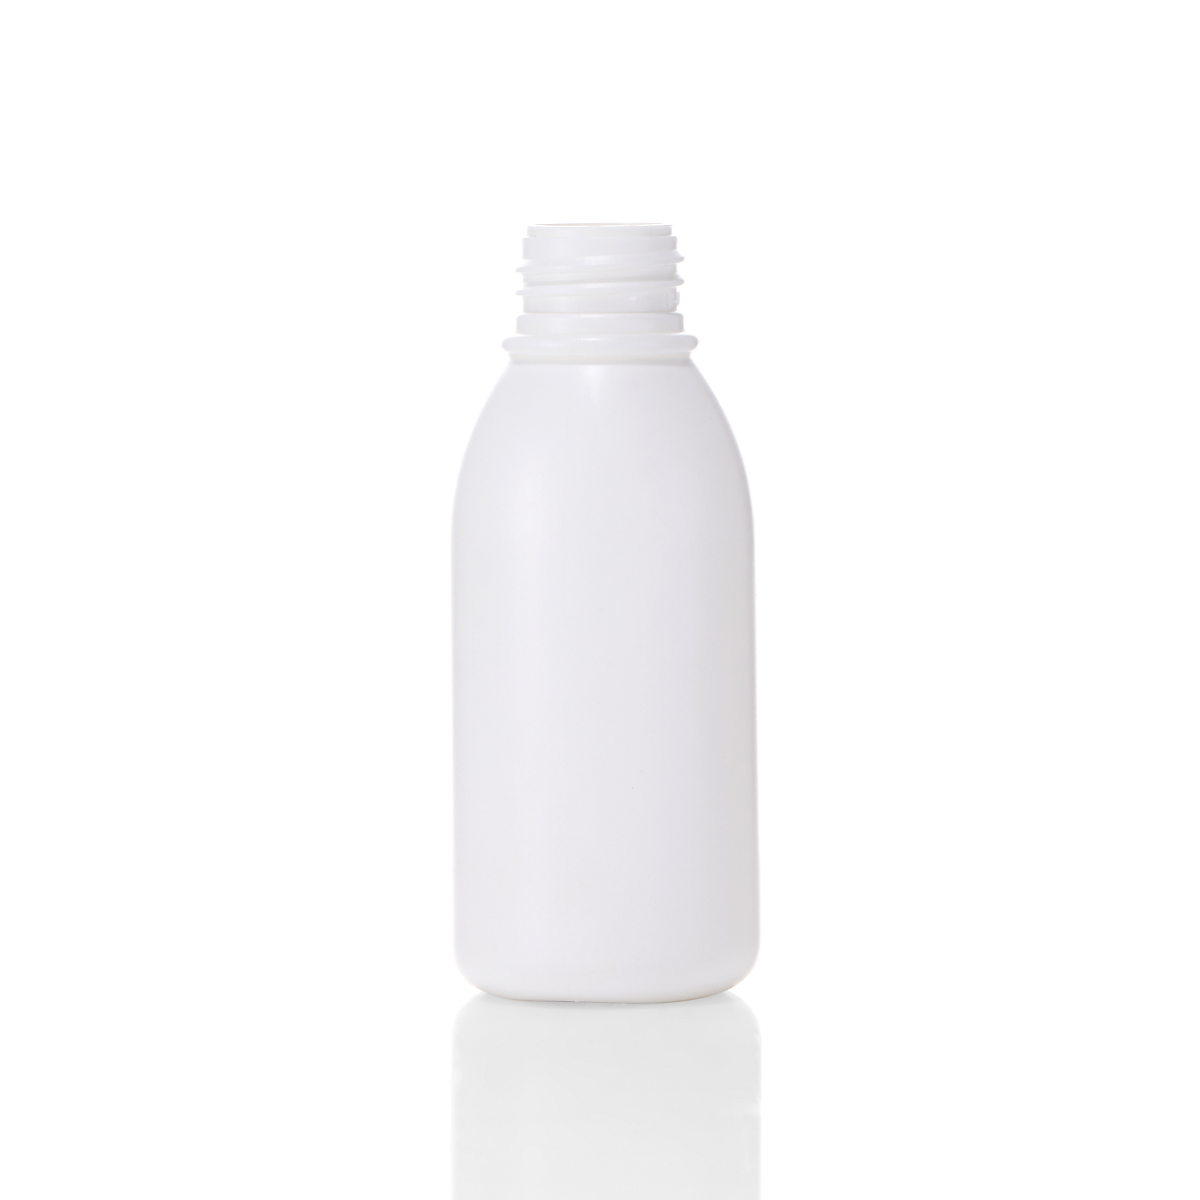 Fragrance Spray Bottle